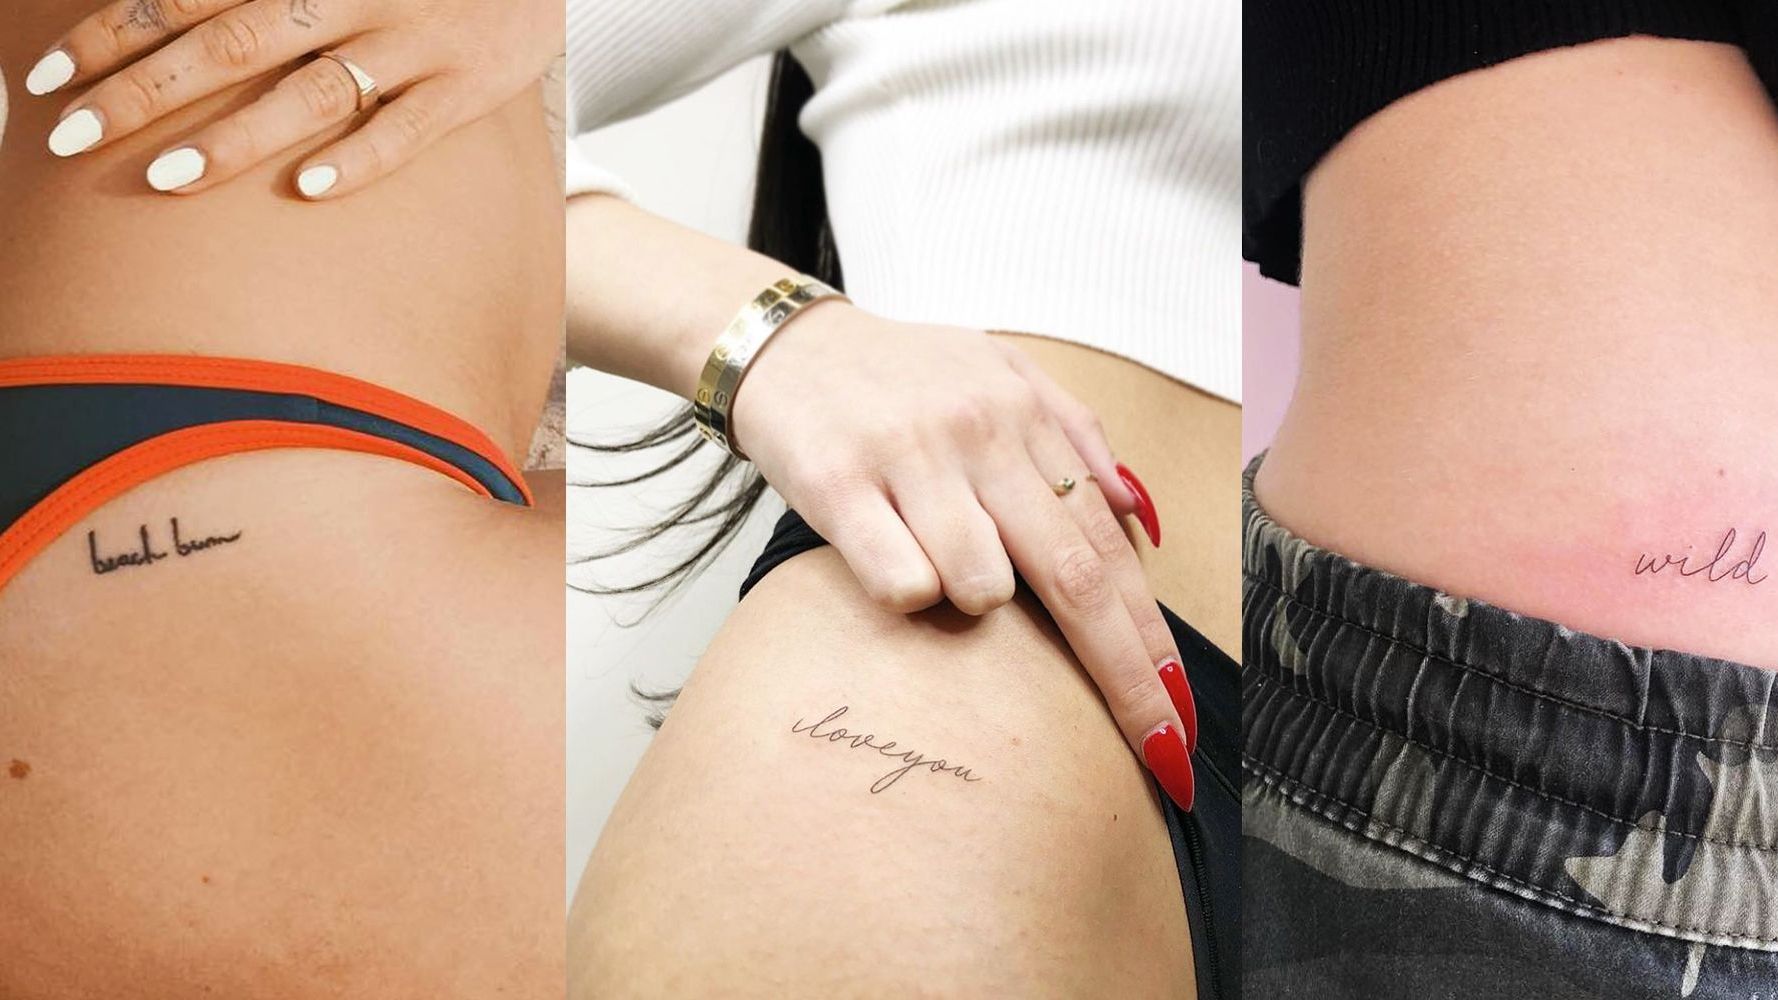 Tatuajes pequeños: 10 ideas con gran significado